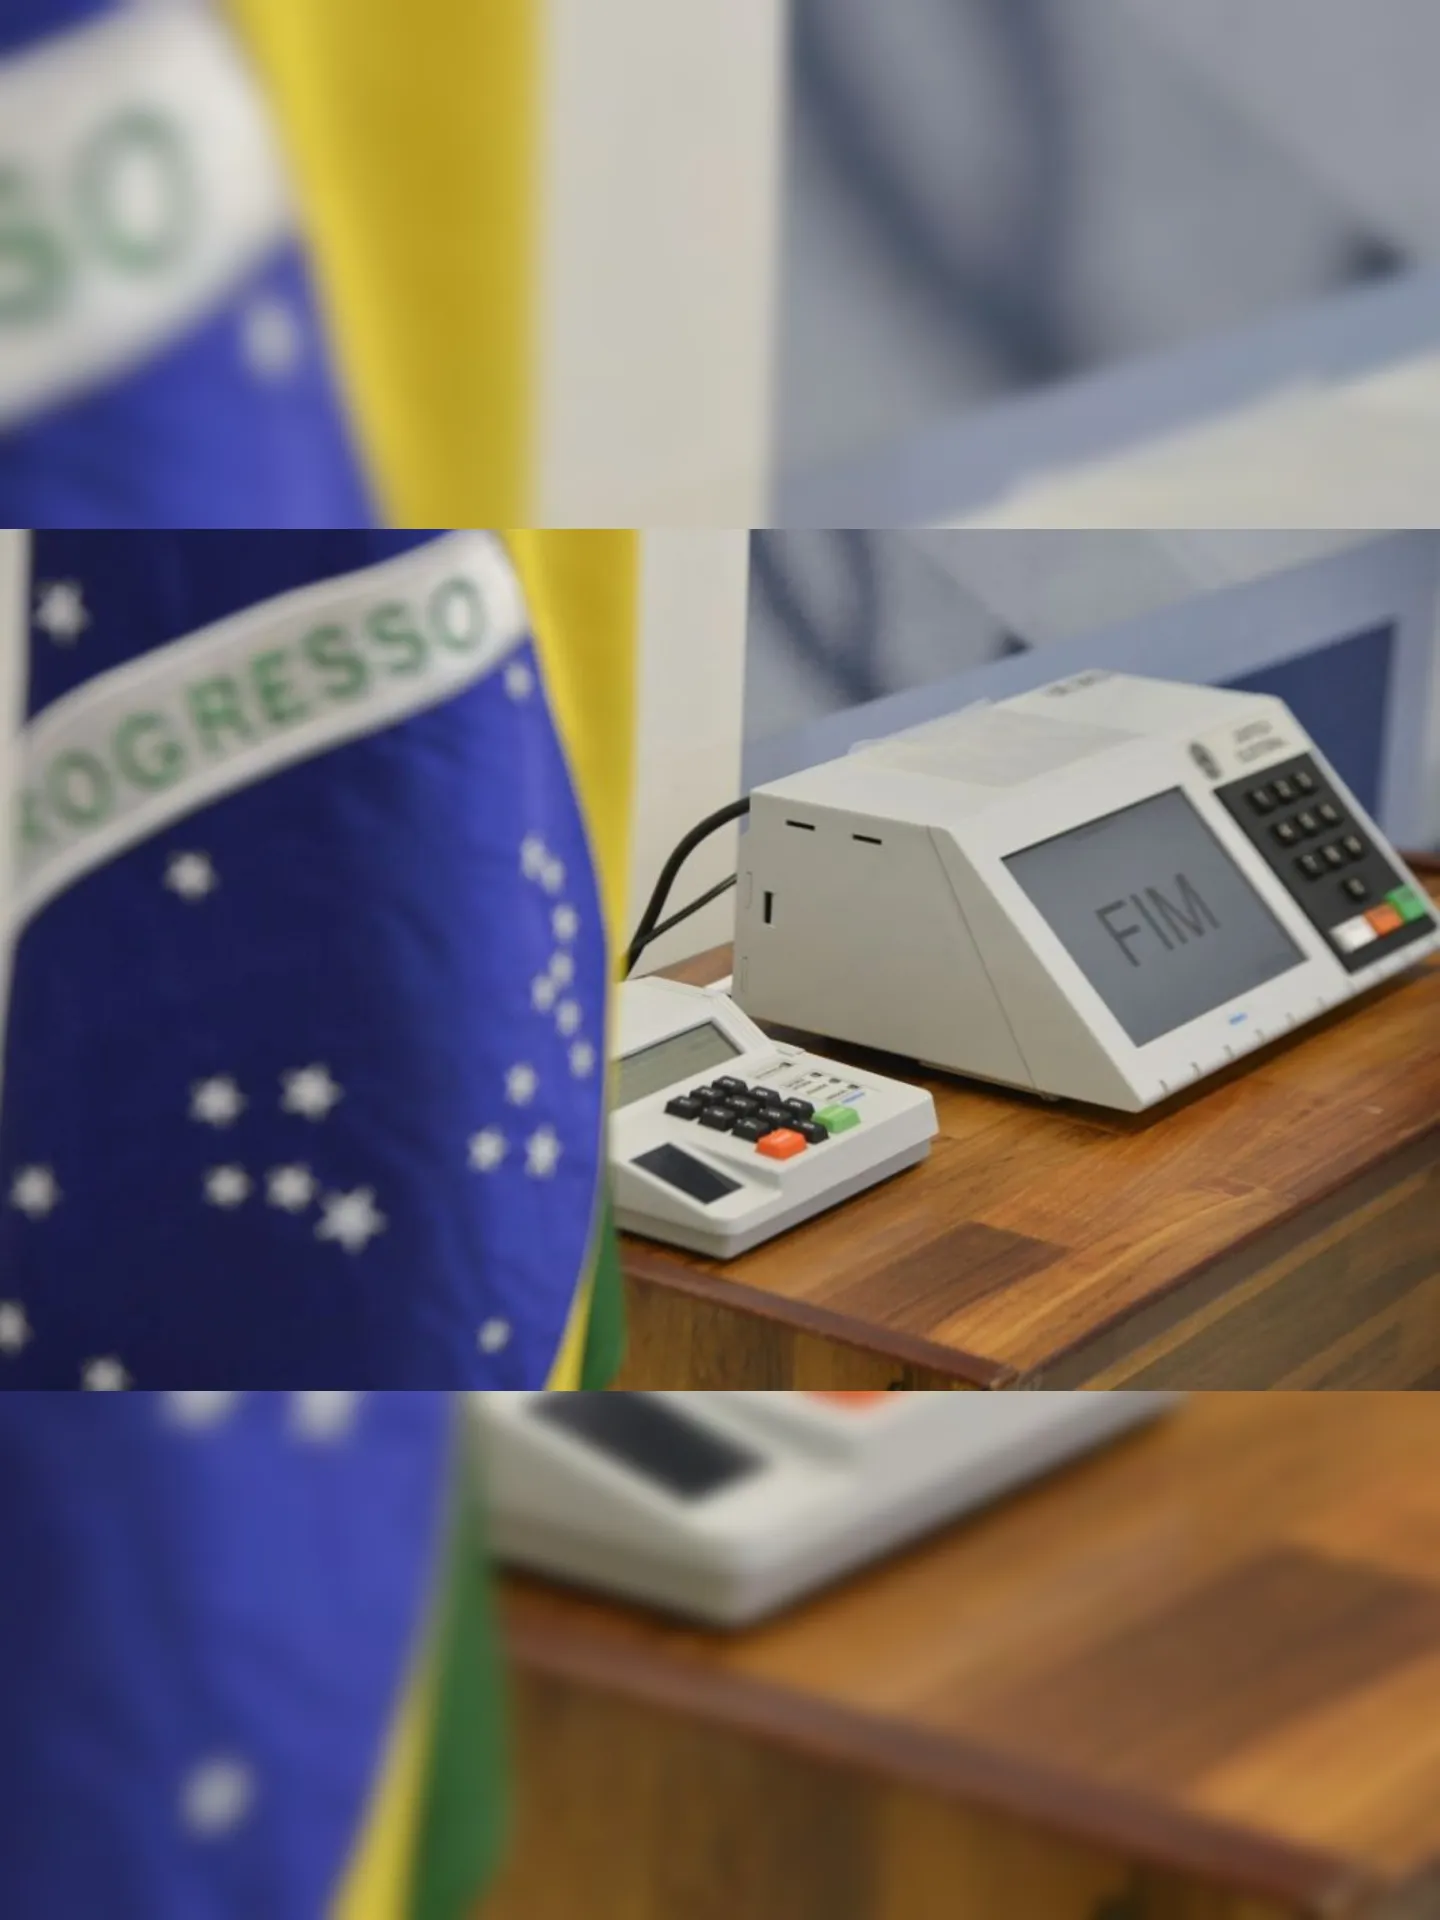 O Tribunal Superior Eleitoral (TSE) conclui a assinatura digital e lacração dos sistemas eleitorais que serão usados nas eleições de outubro (José Cruz/Agência Brasil)